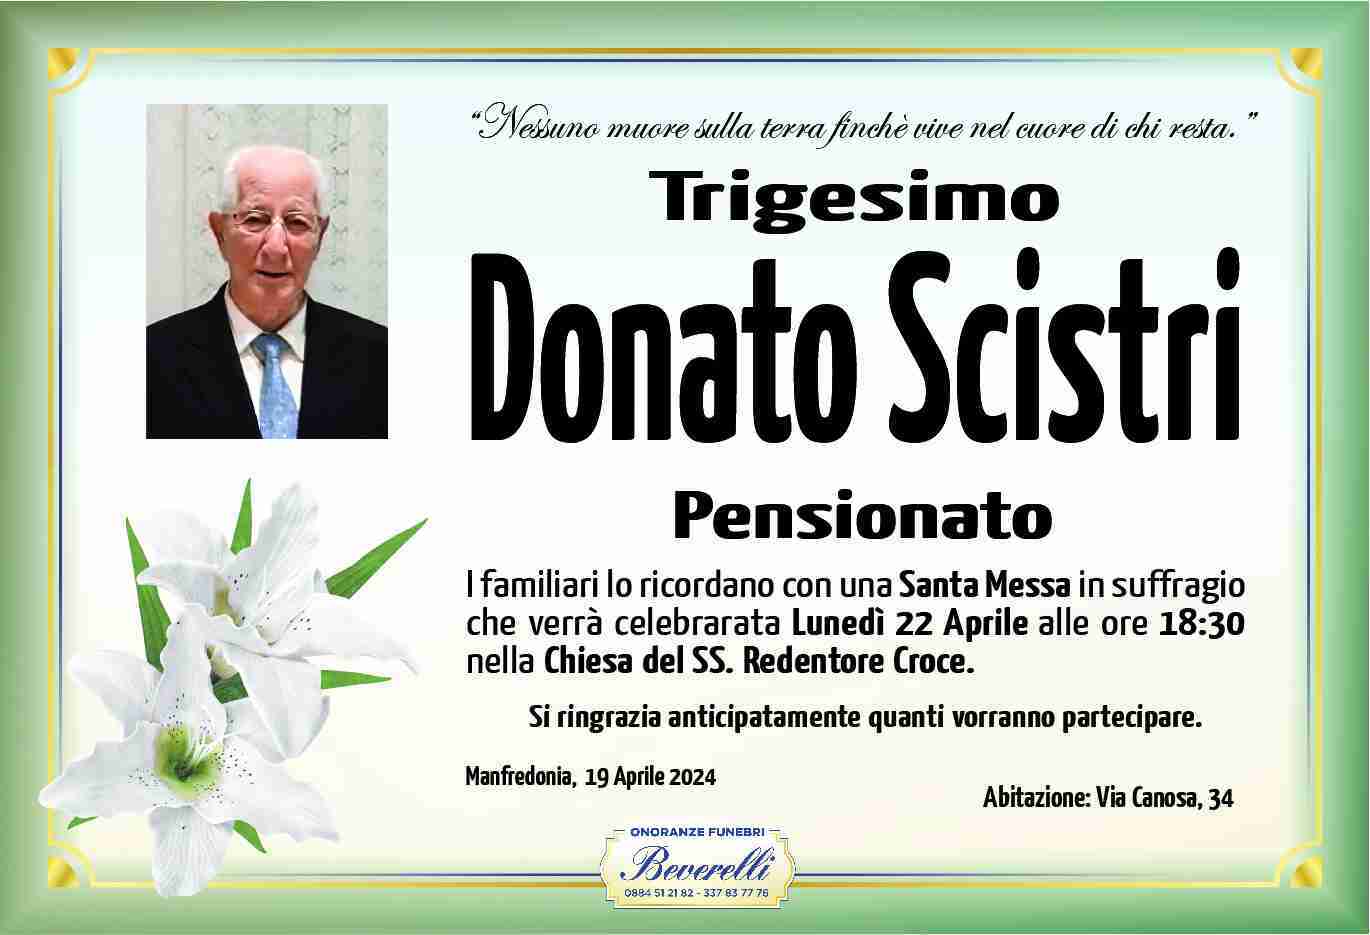 Donato Scistri